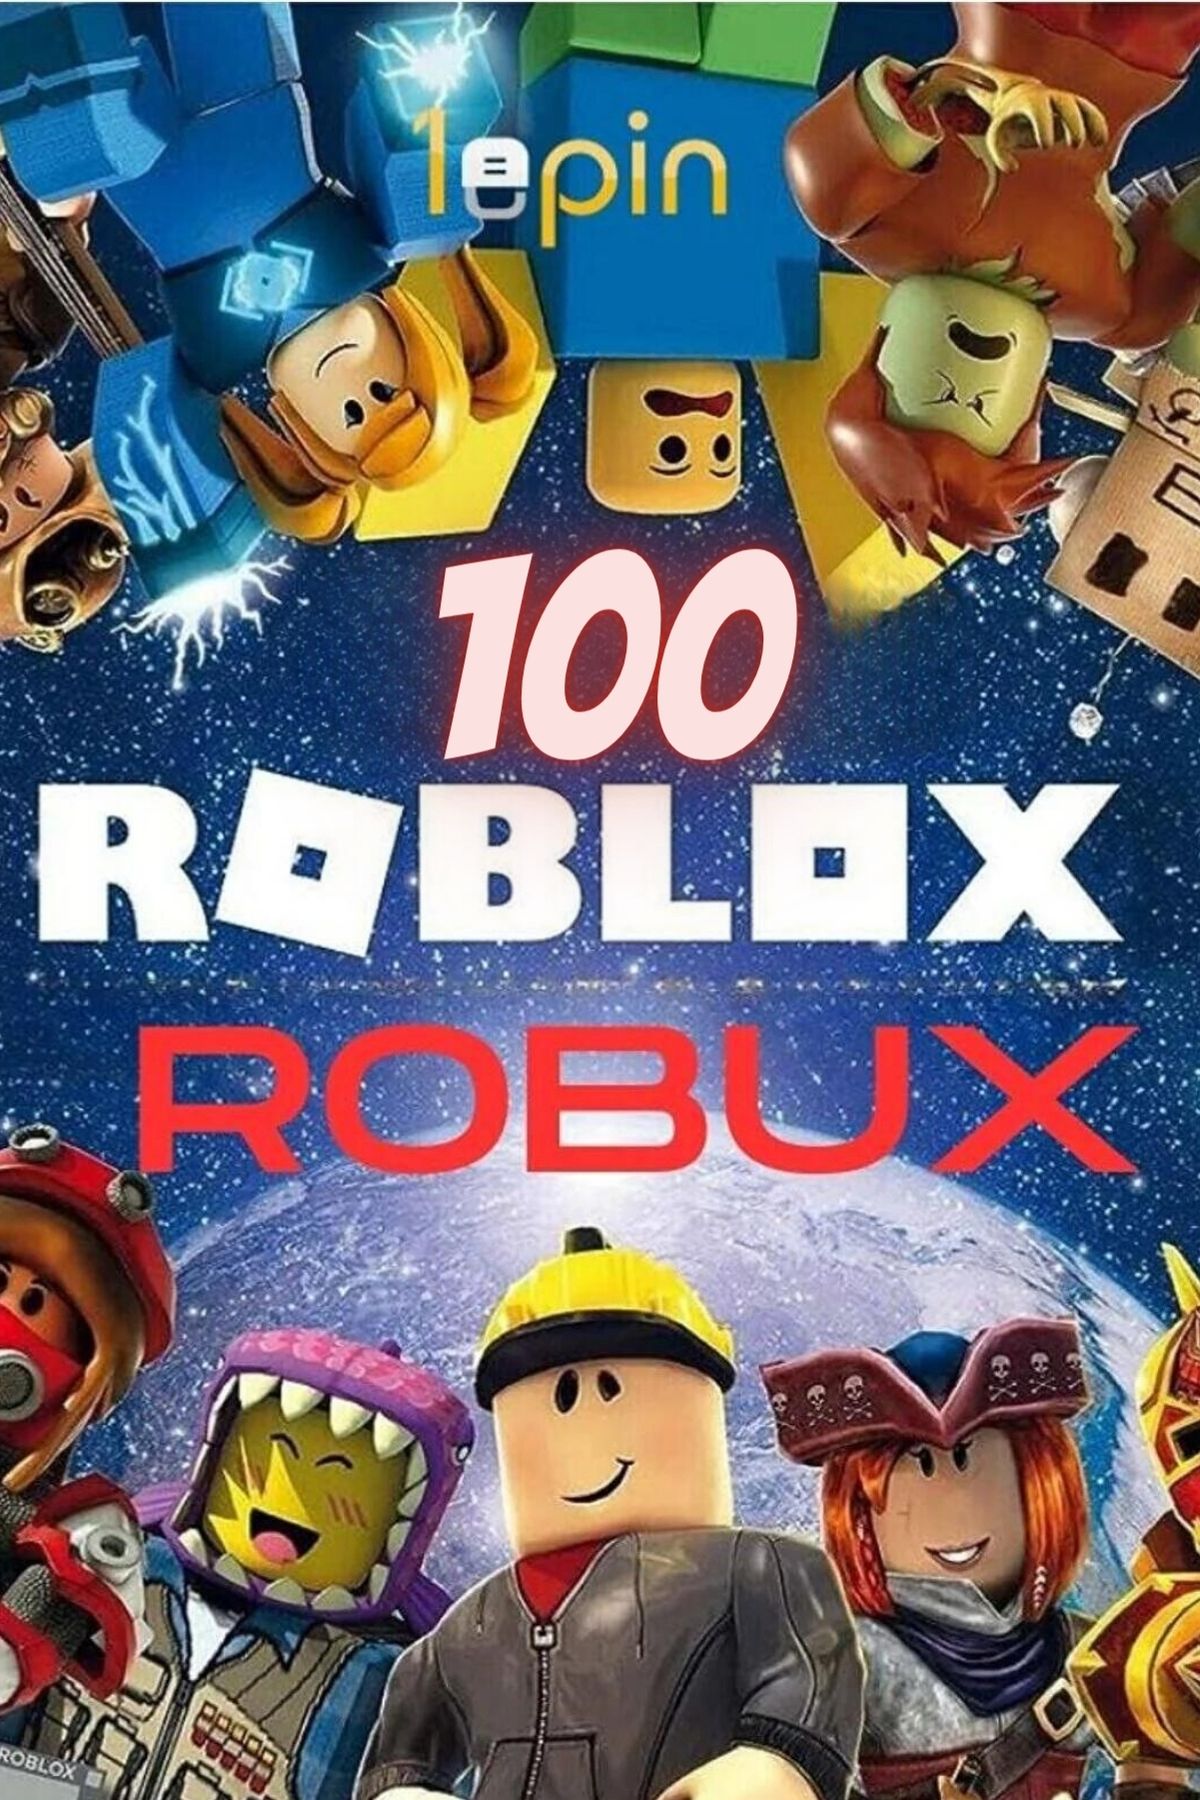 1epin Roblox 100 Robux